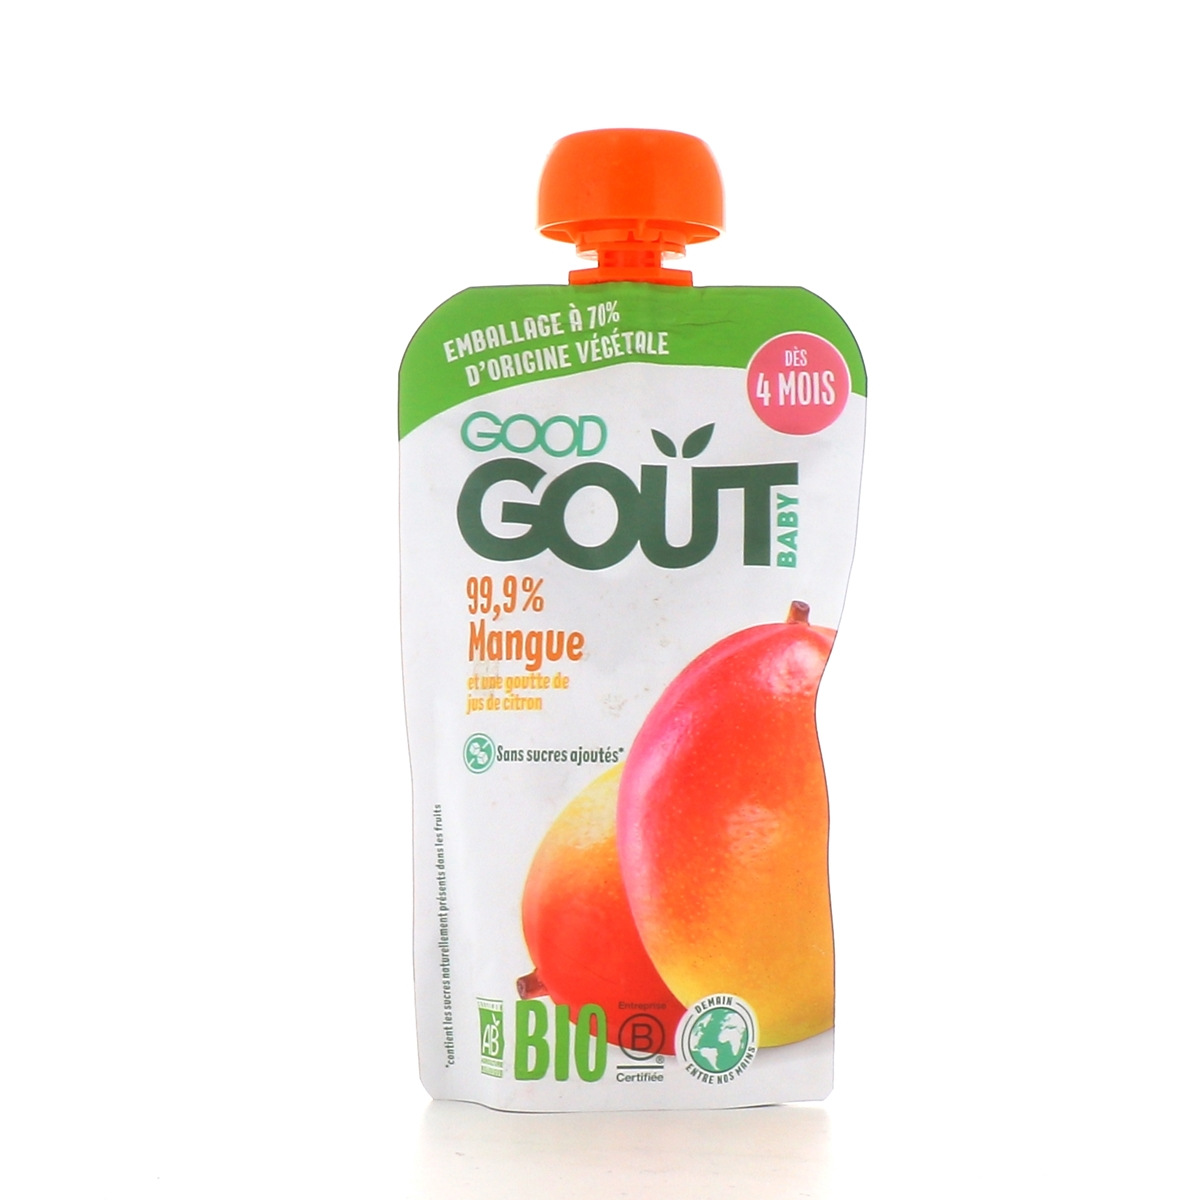 Gourdes Fruits Mangue bio pour Bébé dès 4 mois - Good Goût